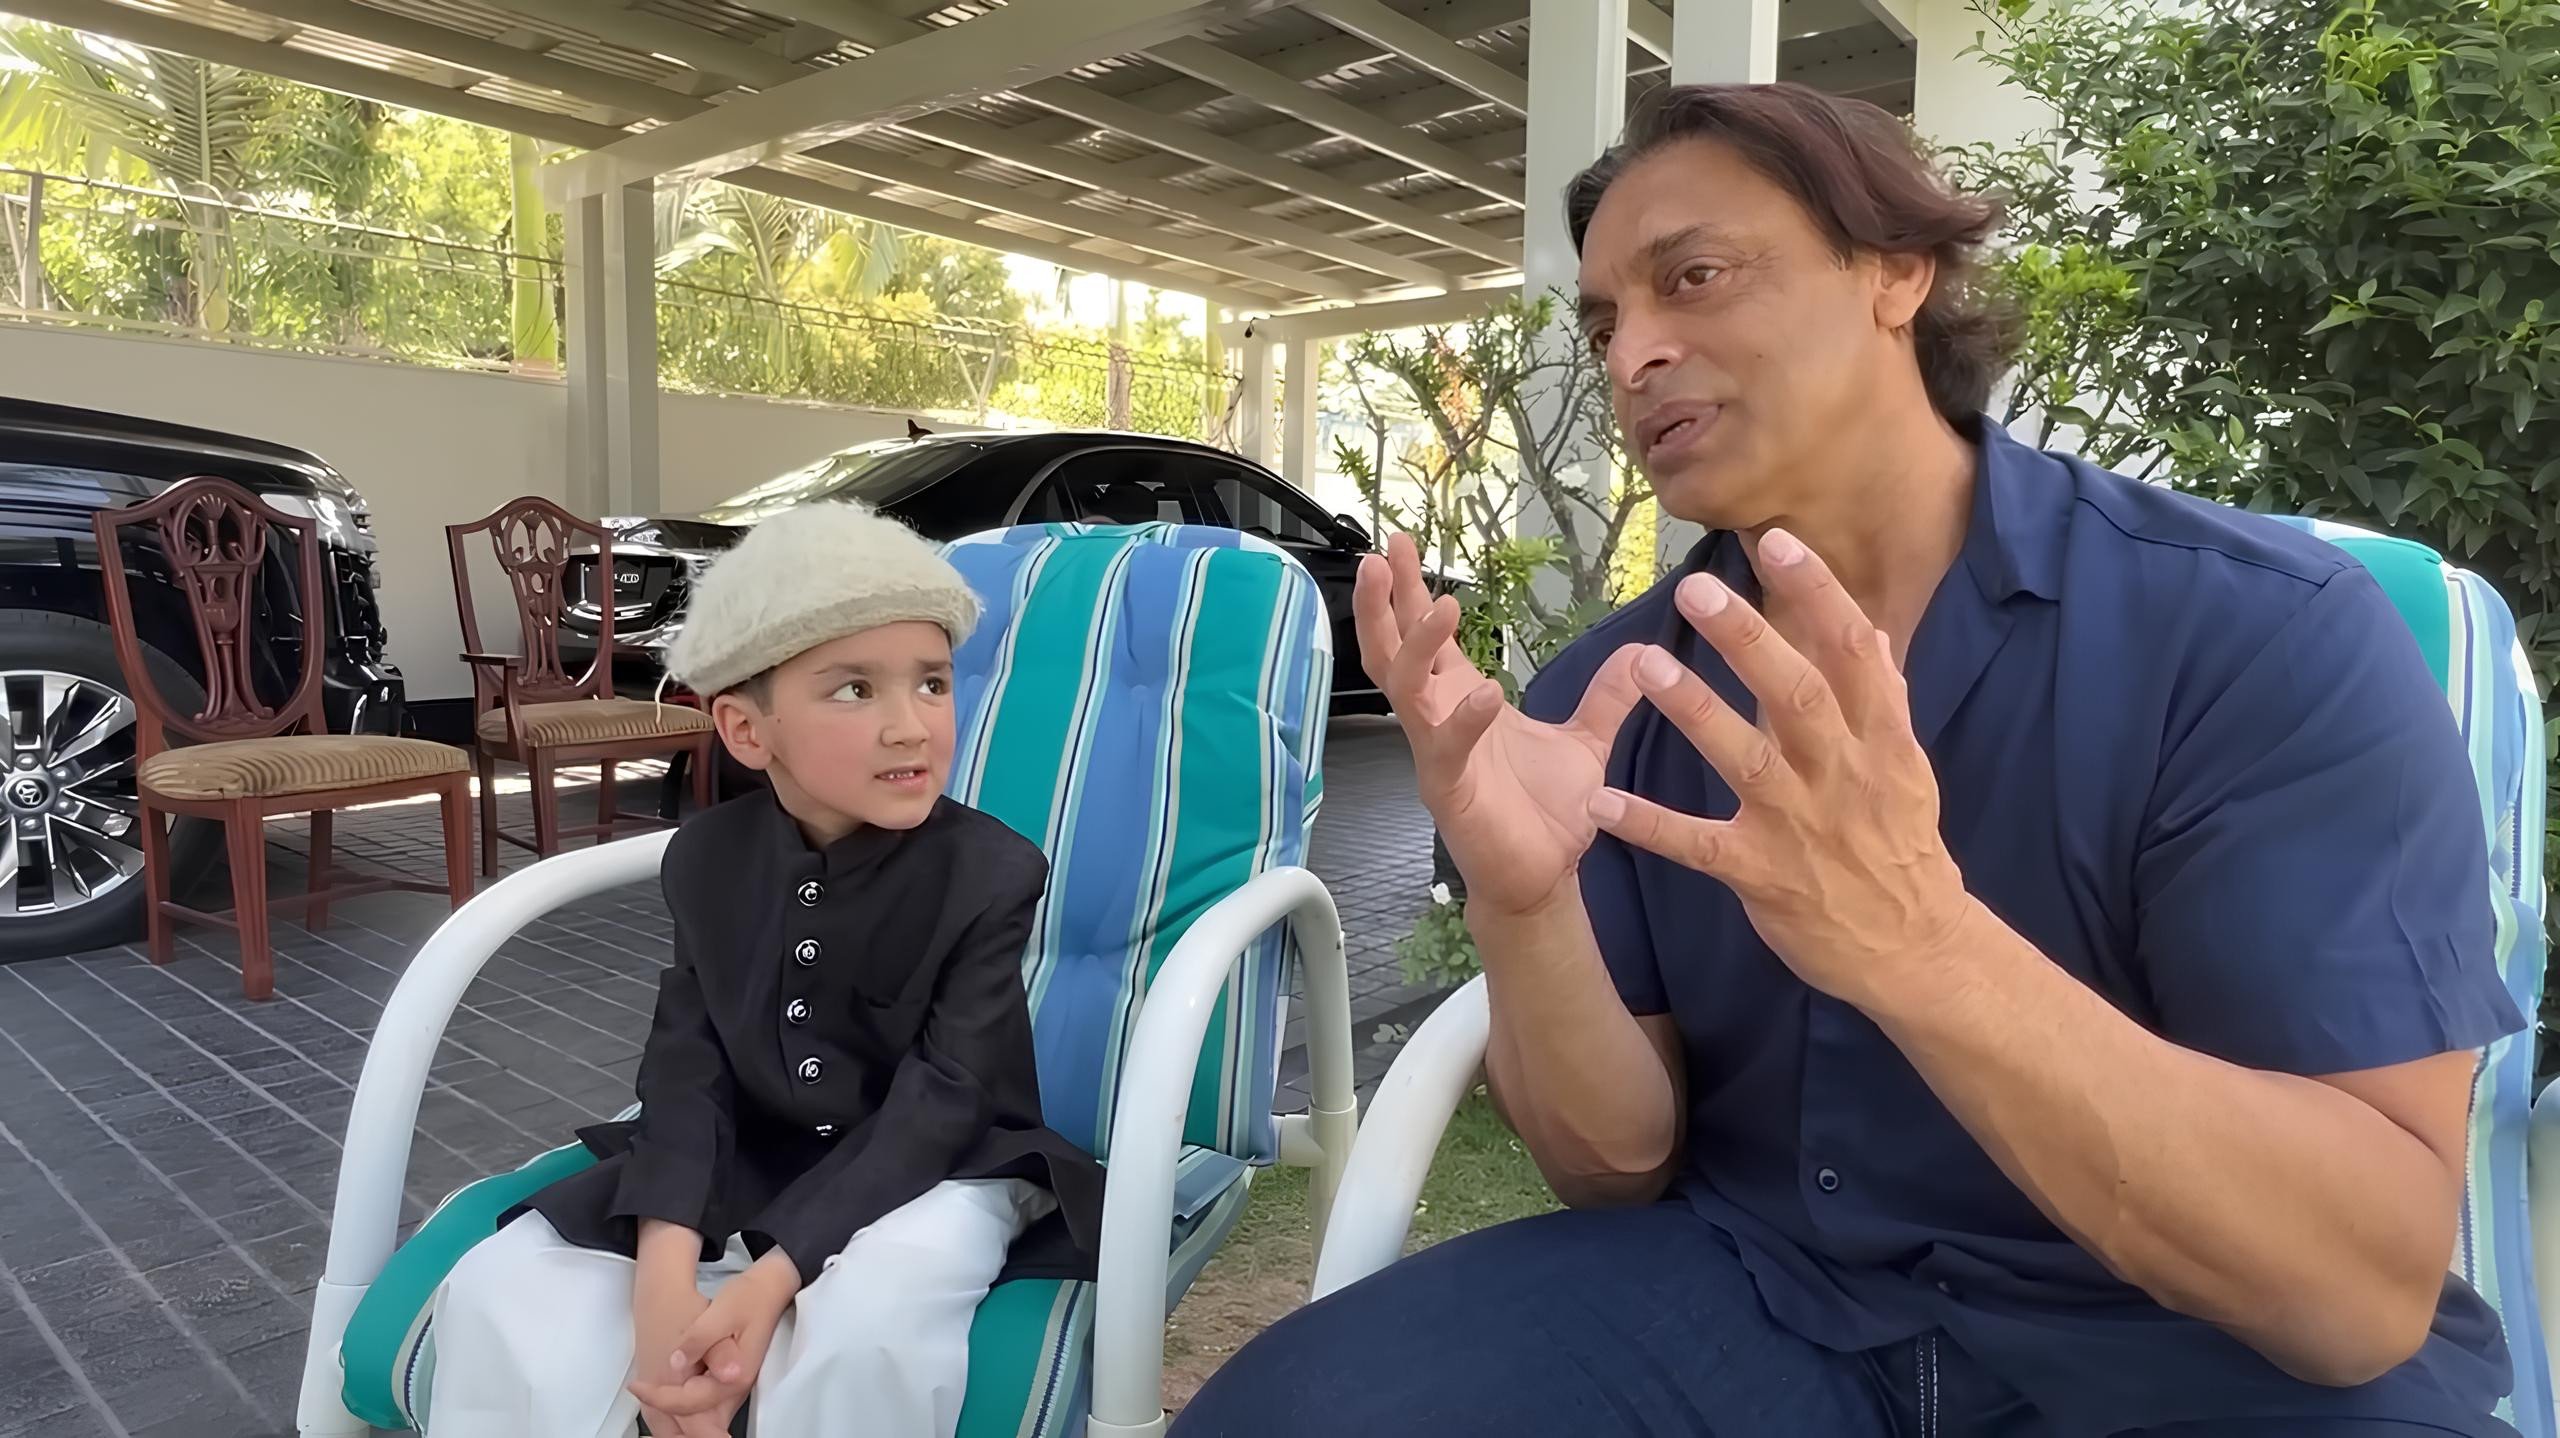 Shoaib Akhtar Child Vlogger Shiraz Bond Over Cricket In Adorable Meetup 50109